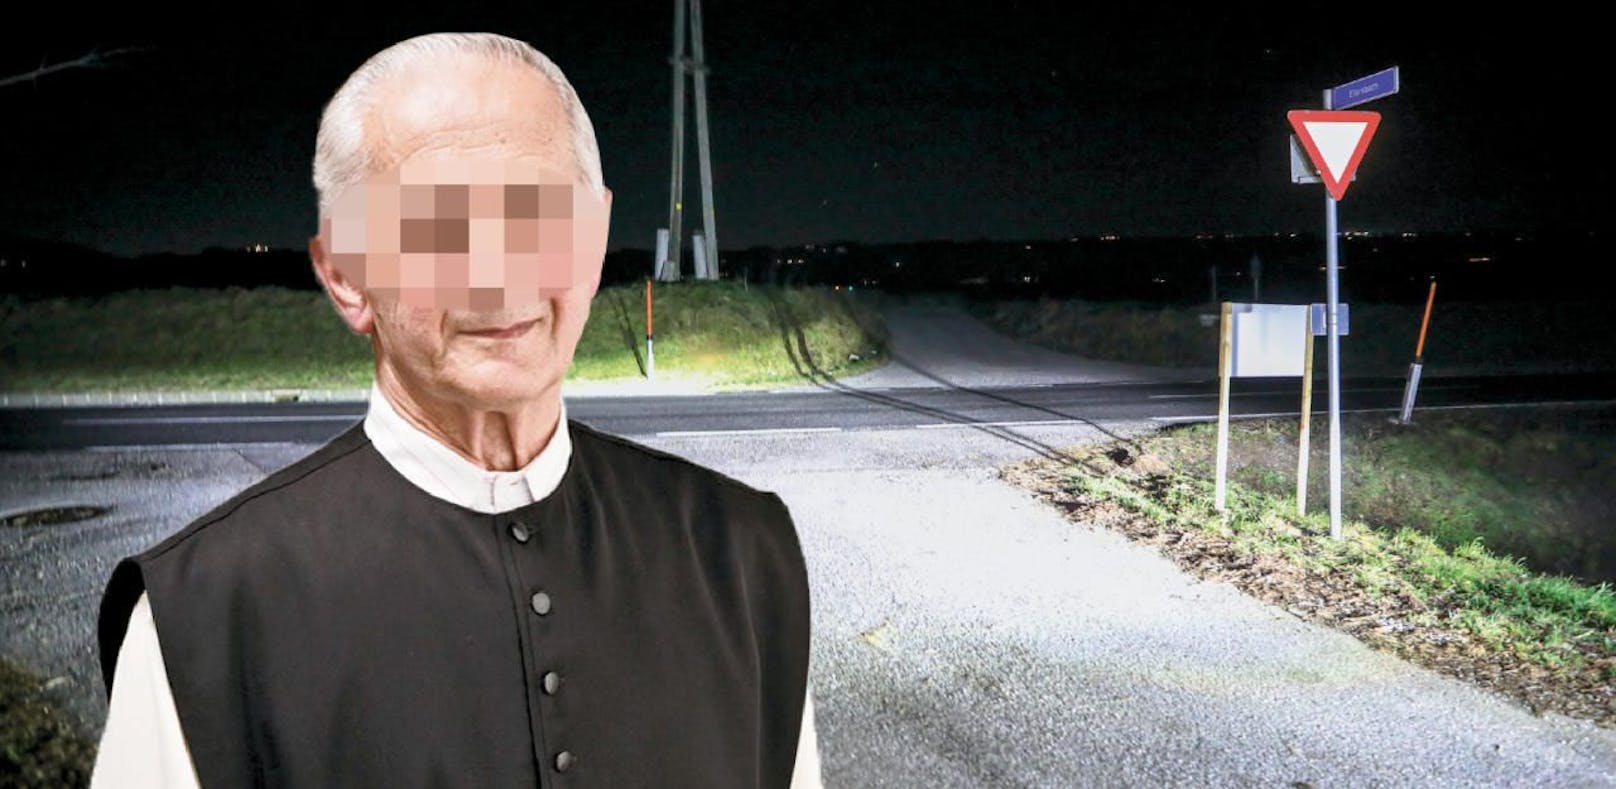 Geistlicher am Rad von Auto erfasst: Priester starb